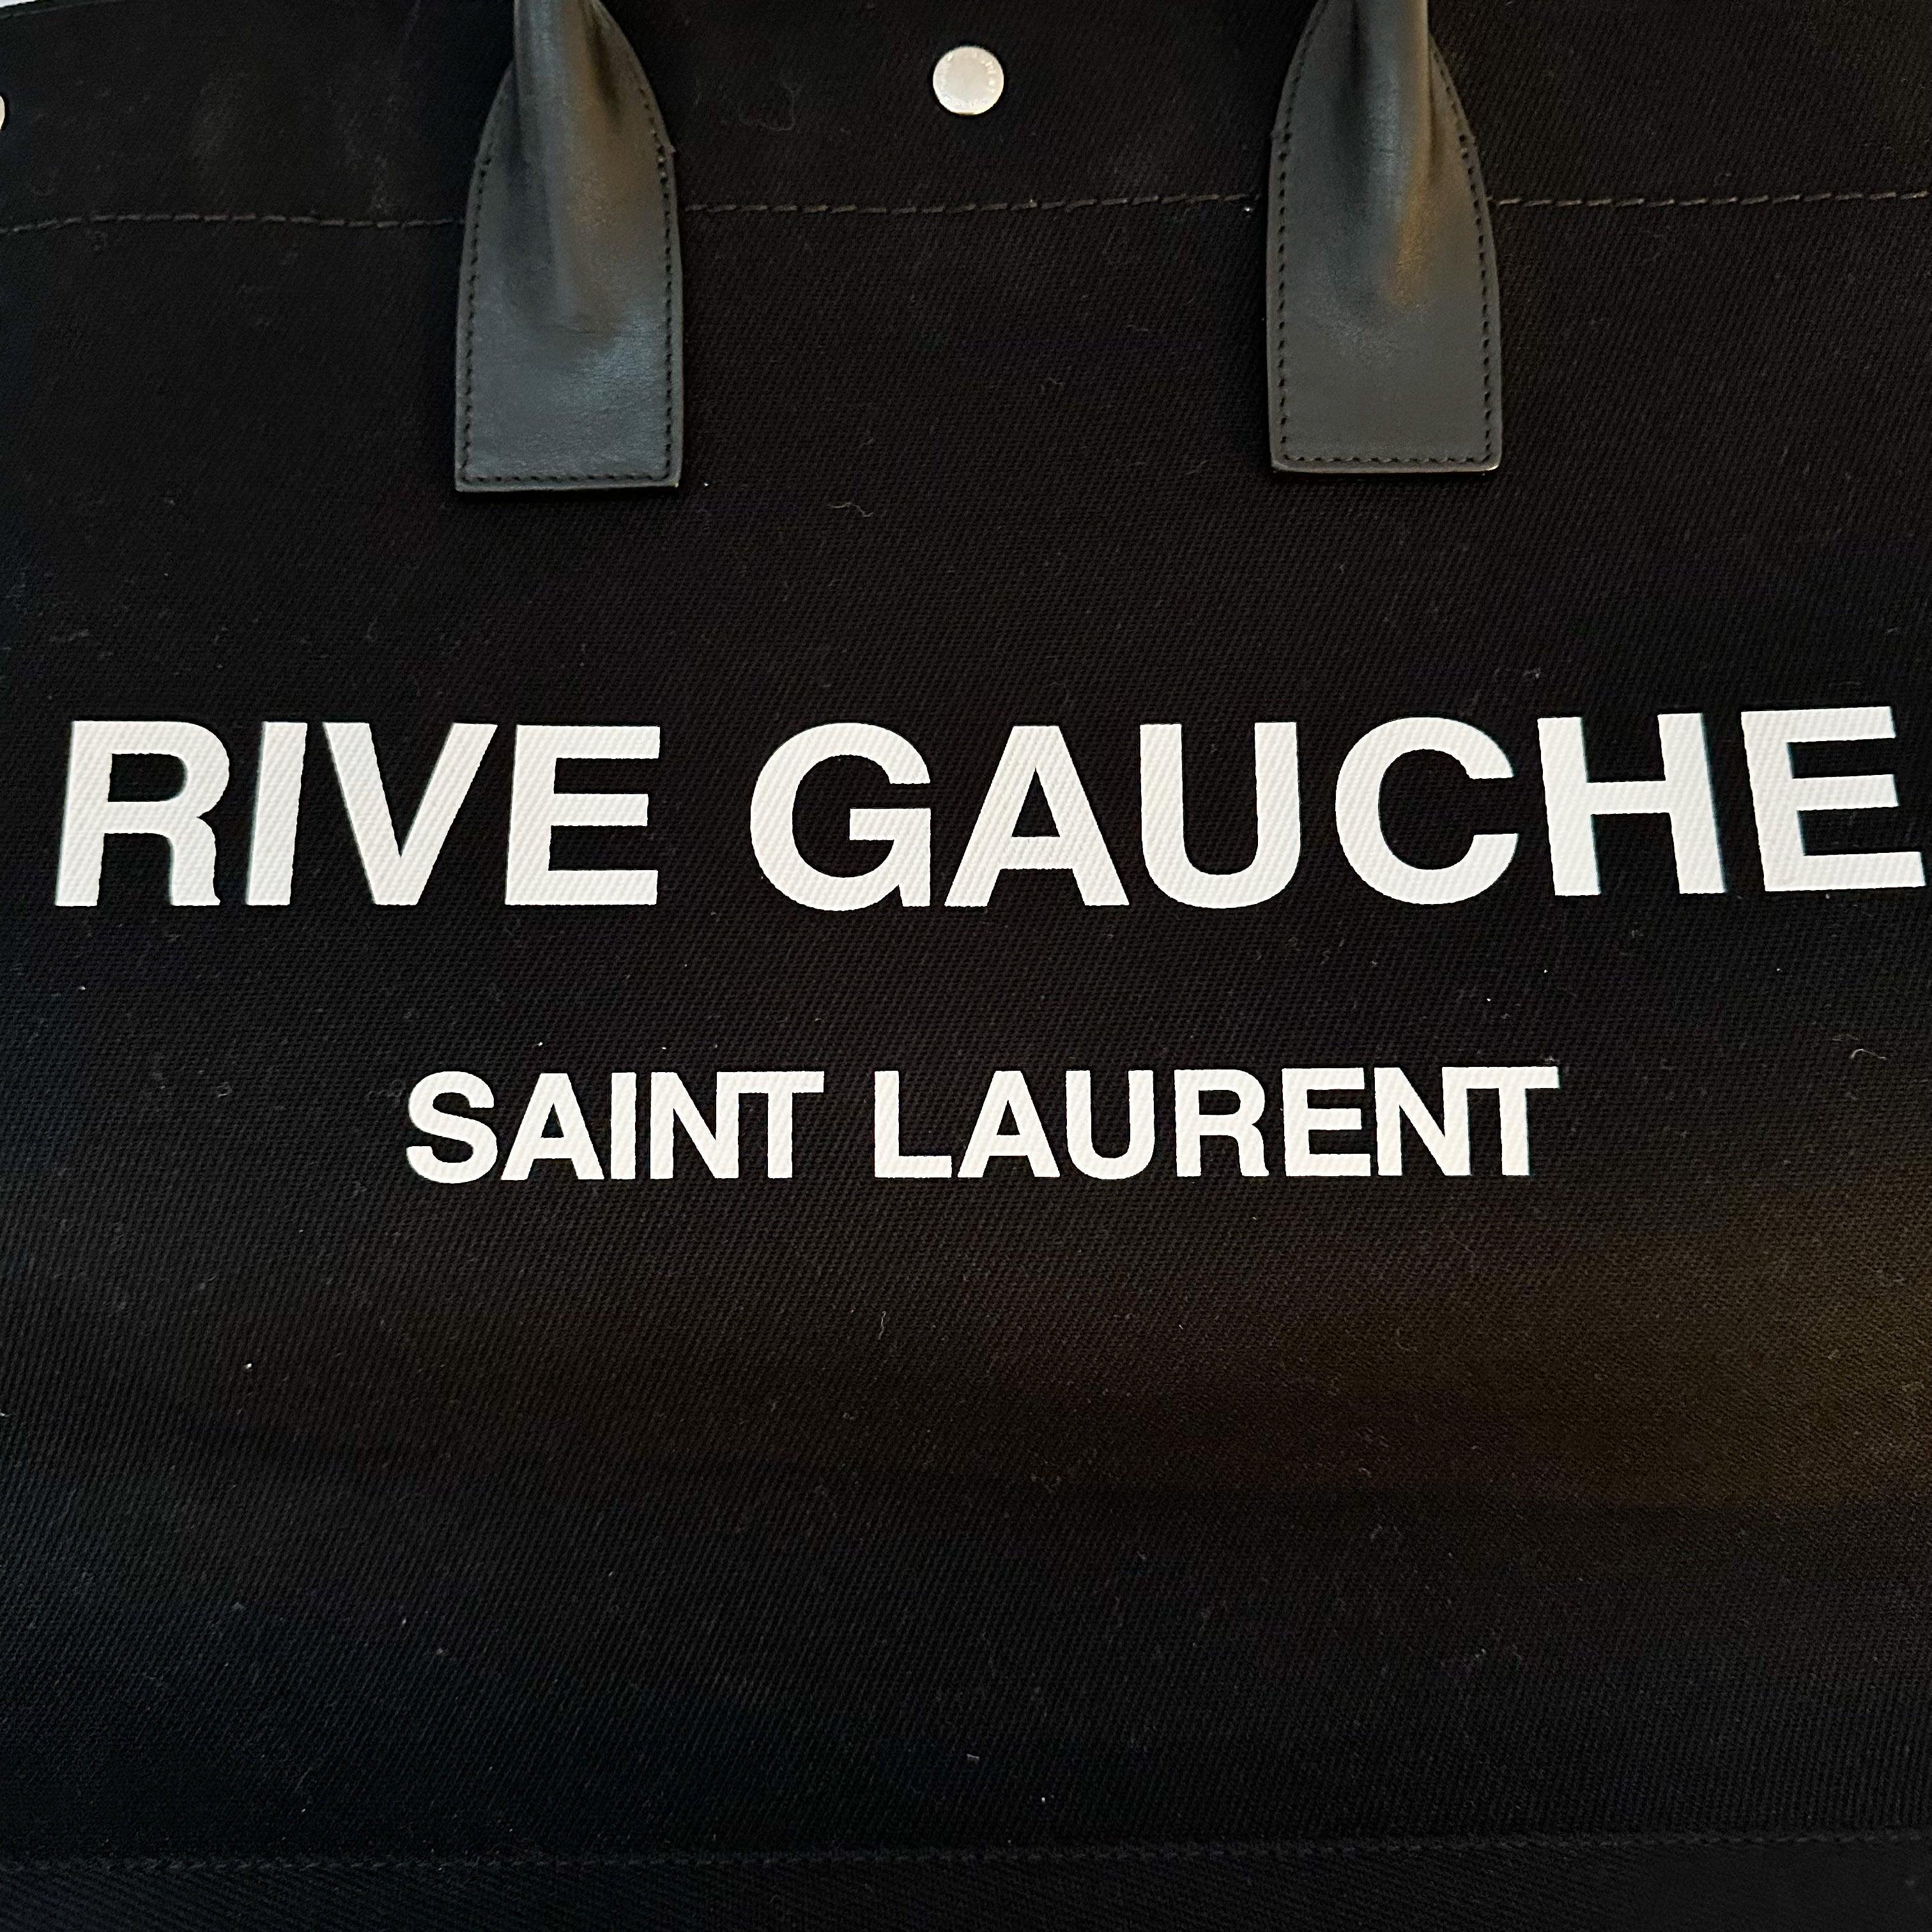 Saint Laurent Rive Gauche Tote - Hiloresale